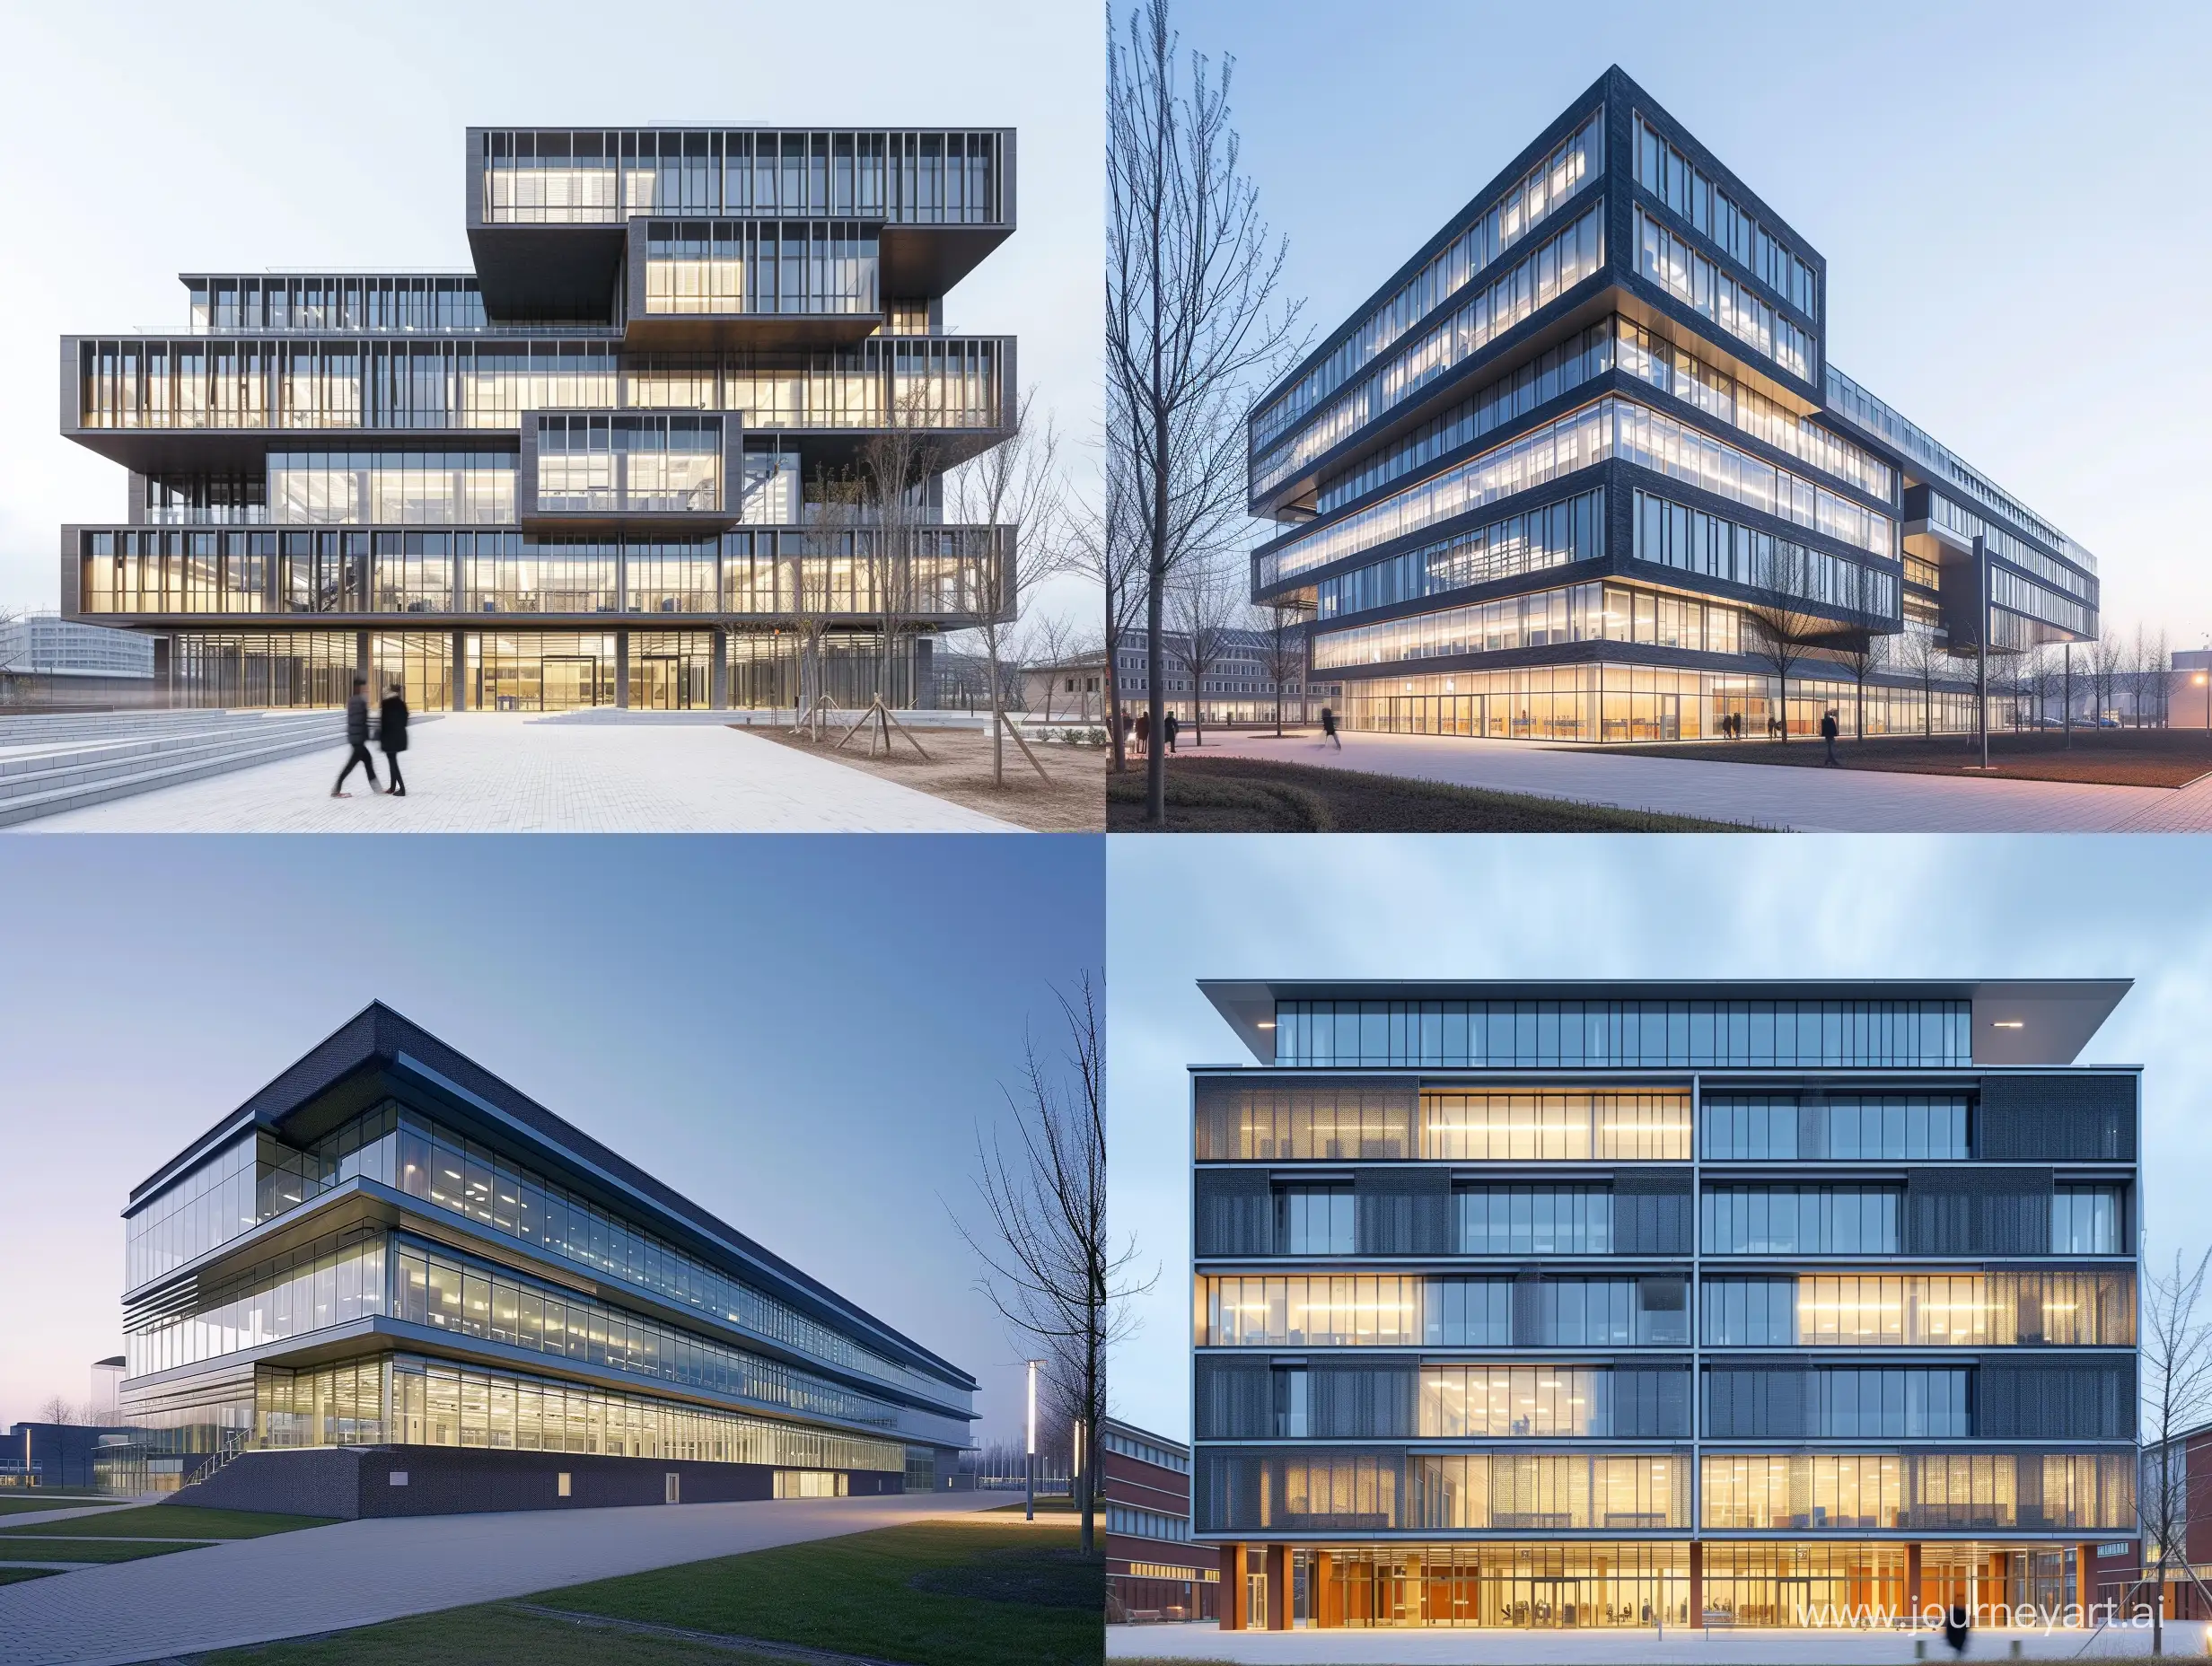 Contemporary-Architectural-Design-Institutional-Building-Contest-8-Floors-Exterior